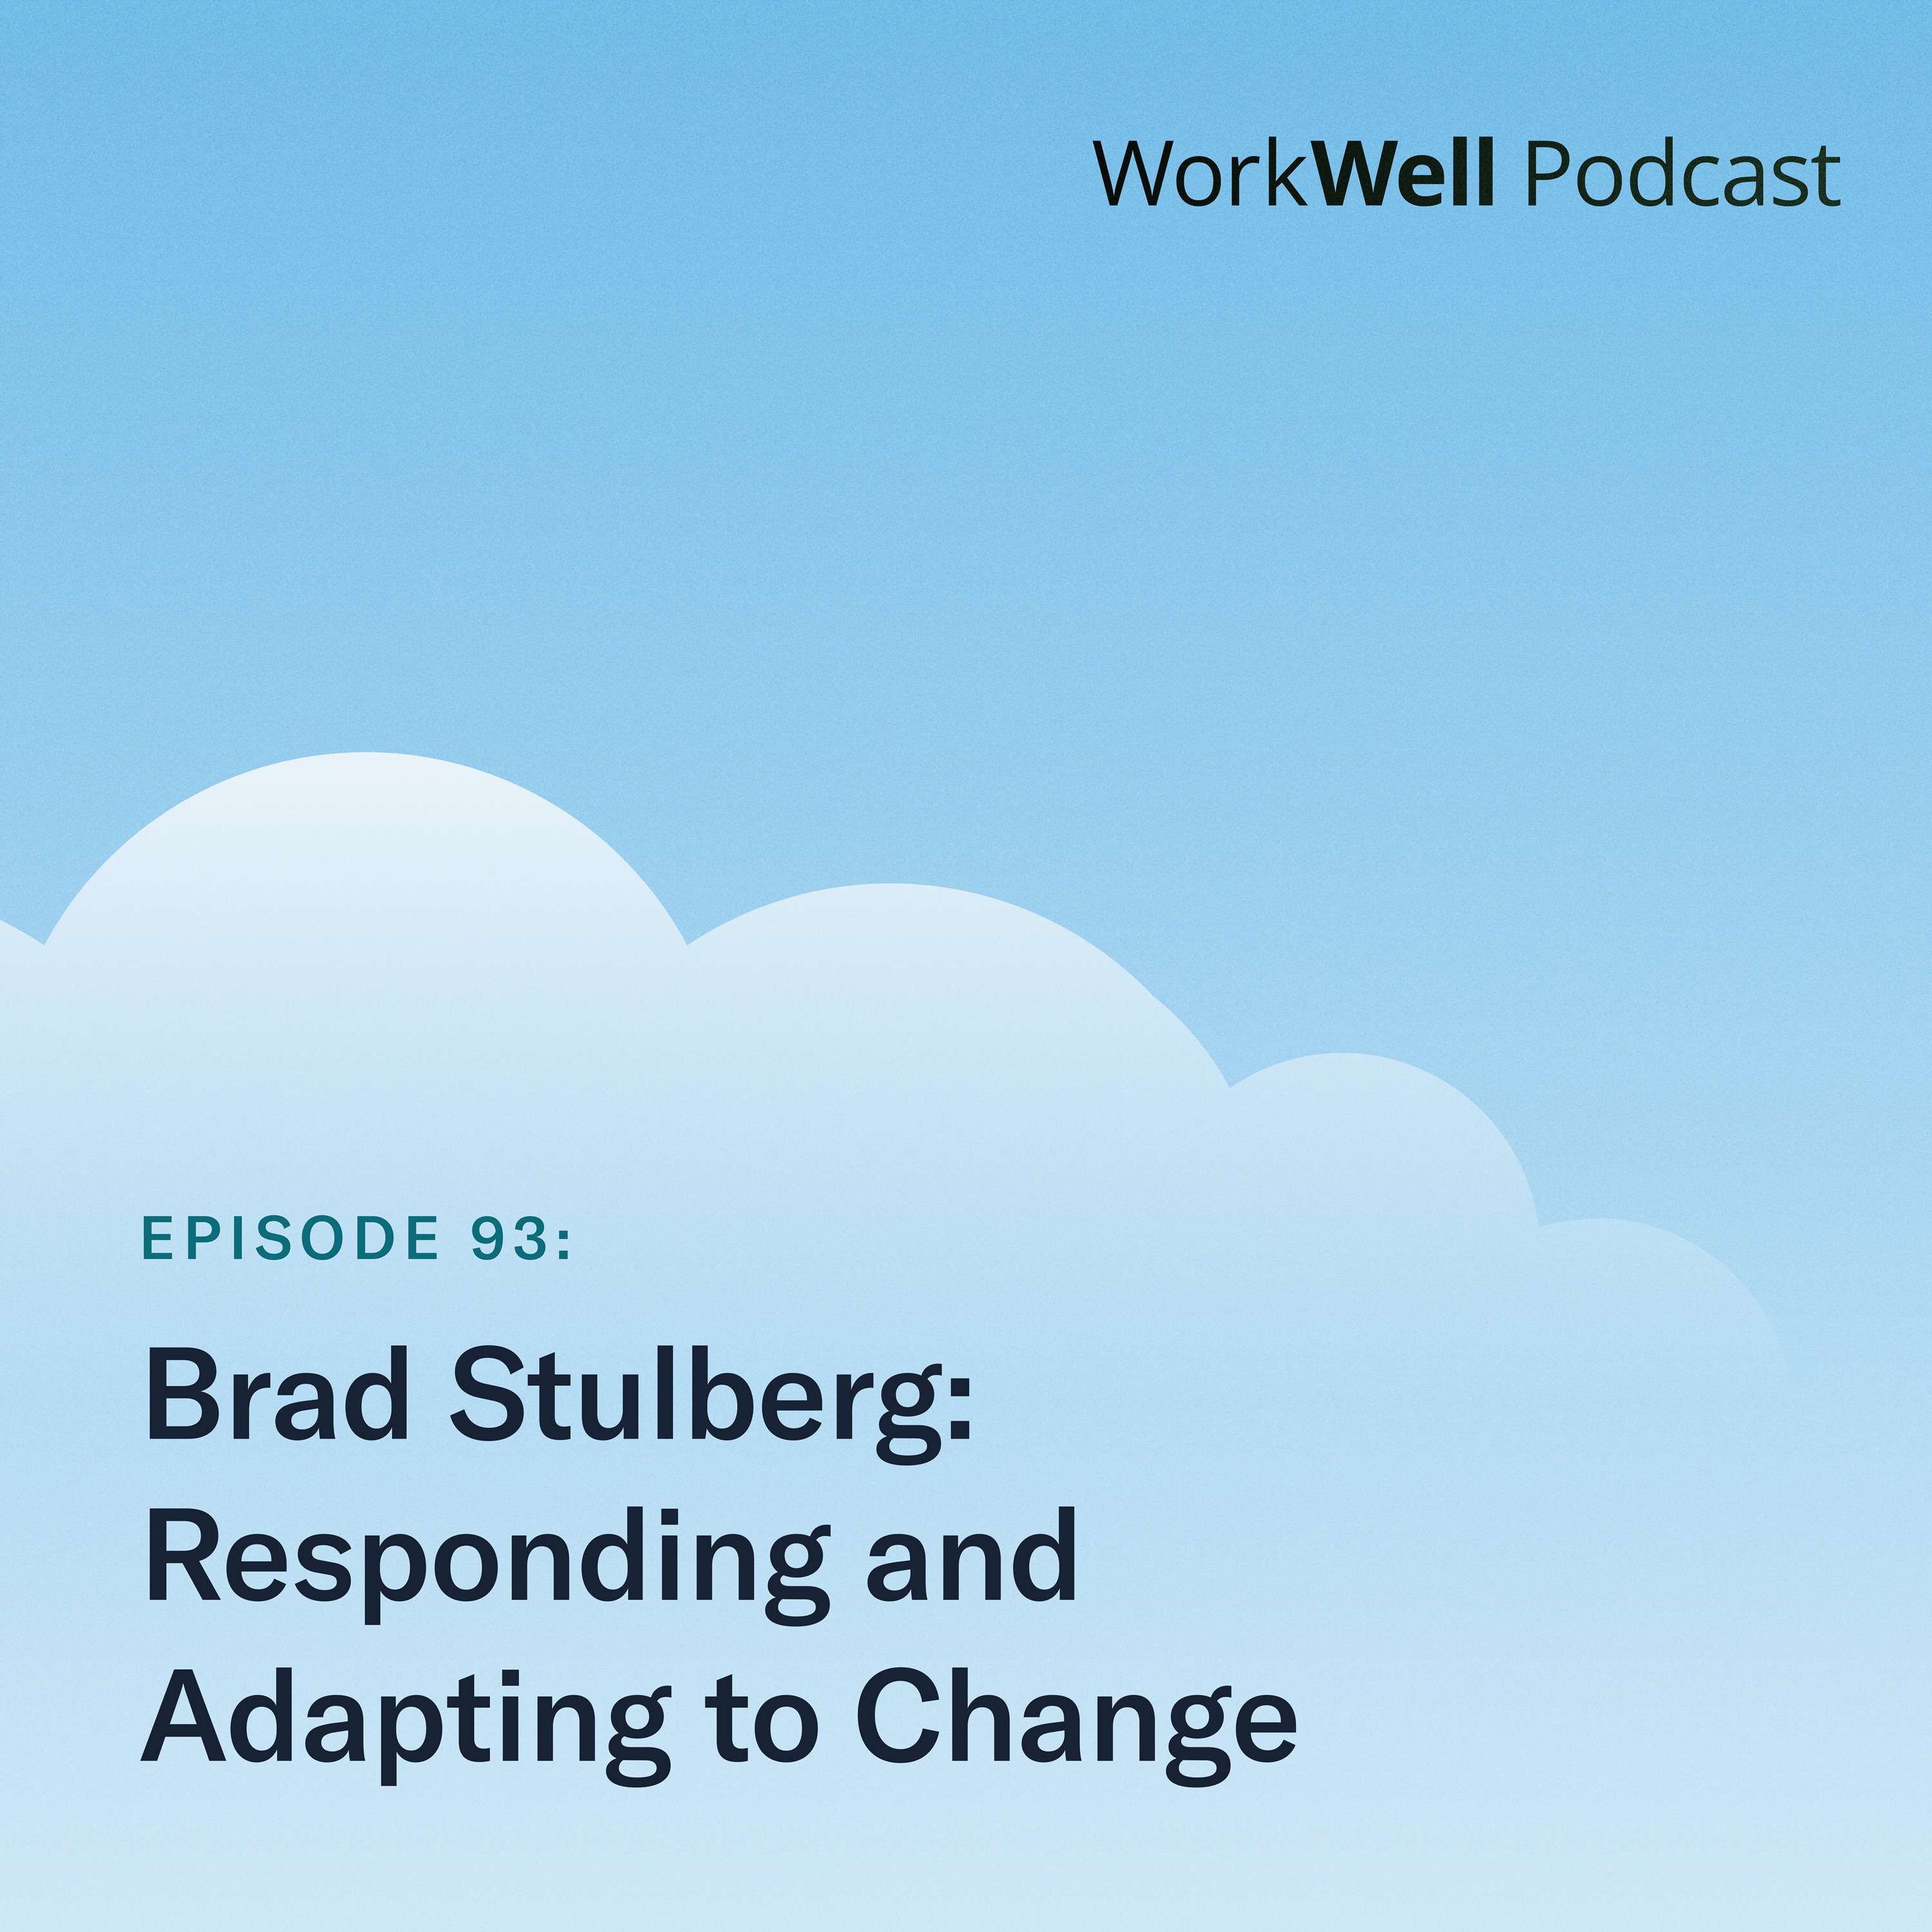 93. Brad Stulberg on responding and adapting to change  